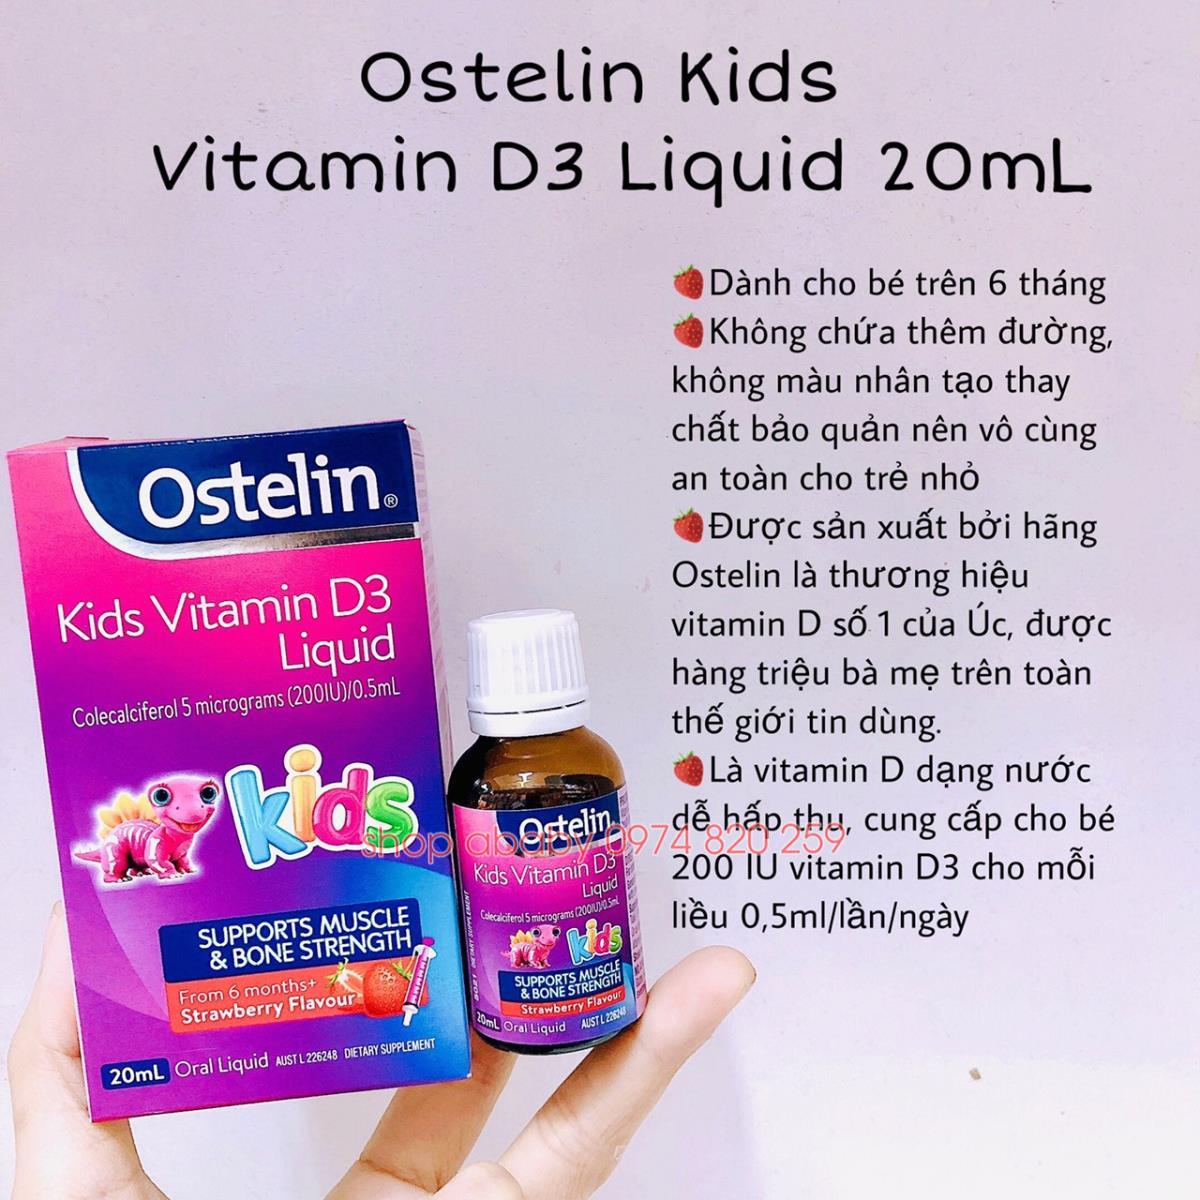 Vitamin D3 Liquid có thể bổ sung cho trẻ em hay không?
